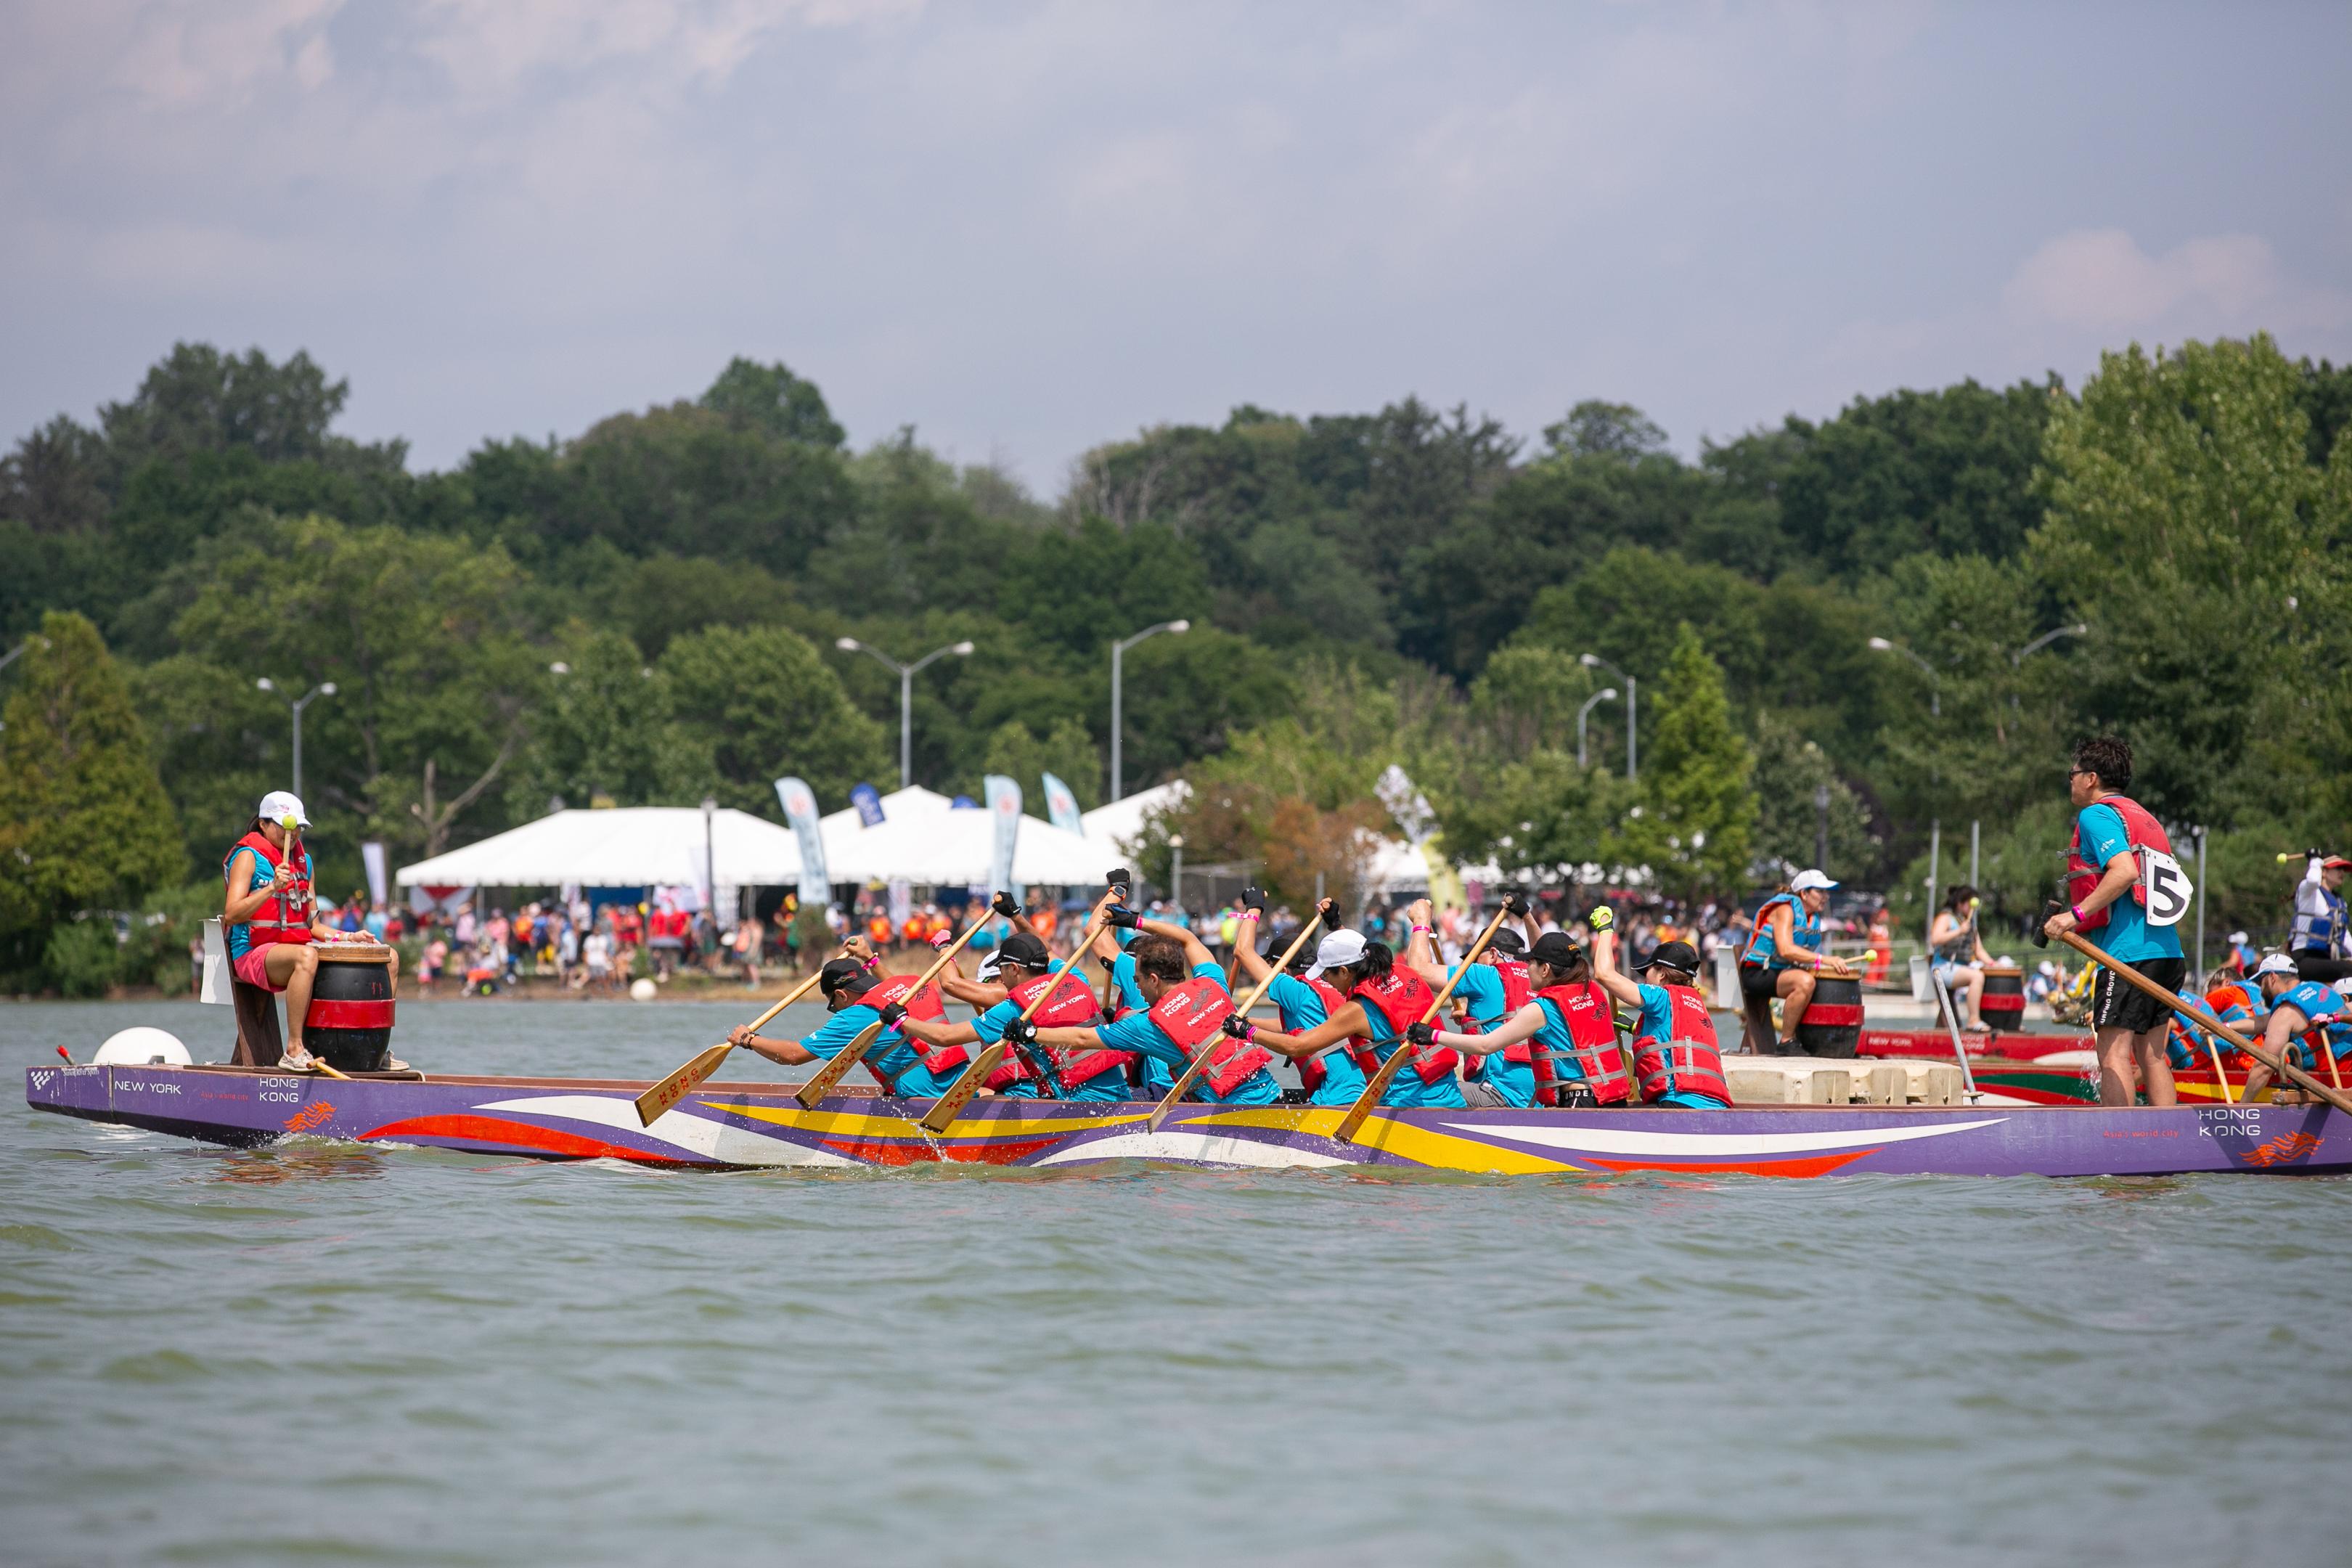 第三十一届纽约香港龙舟节八月十二日及十三日（纽约时间）于法拉盛草原可乐娜公园举行。今年约180支队伍、超过1 500名健儿竞逐殊荣。